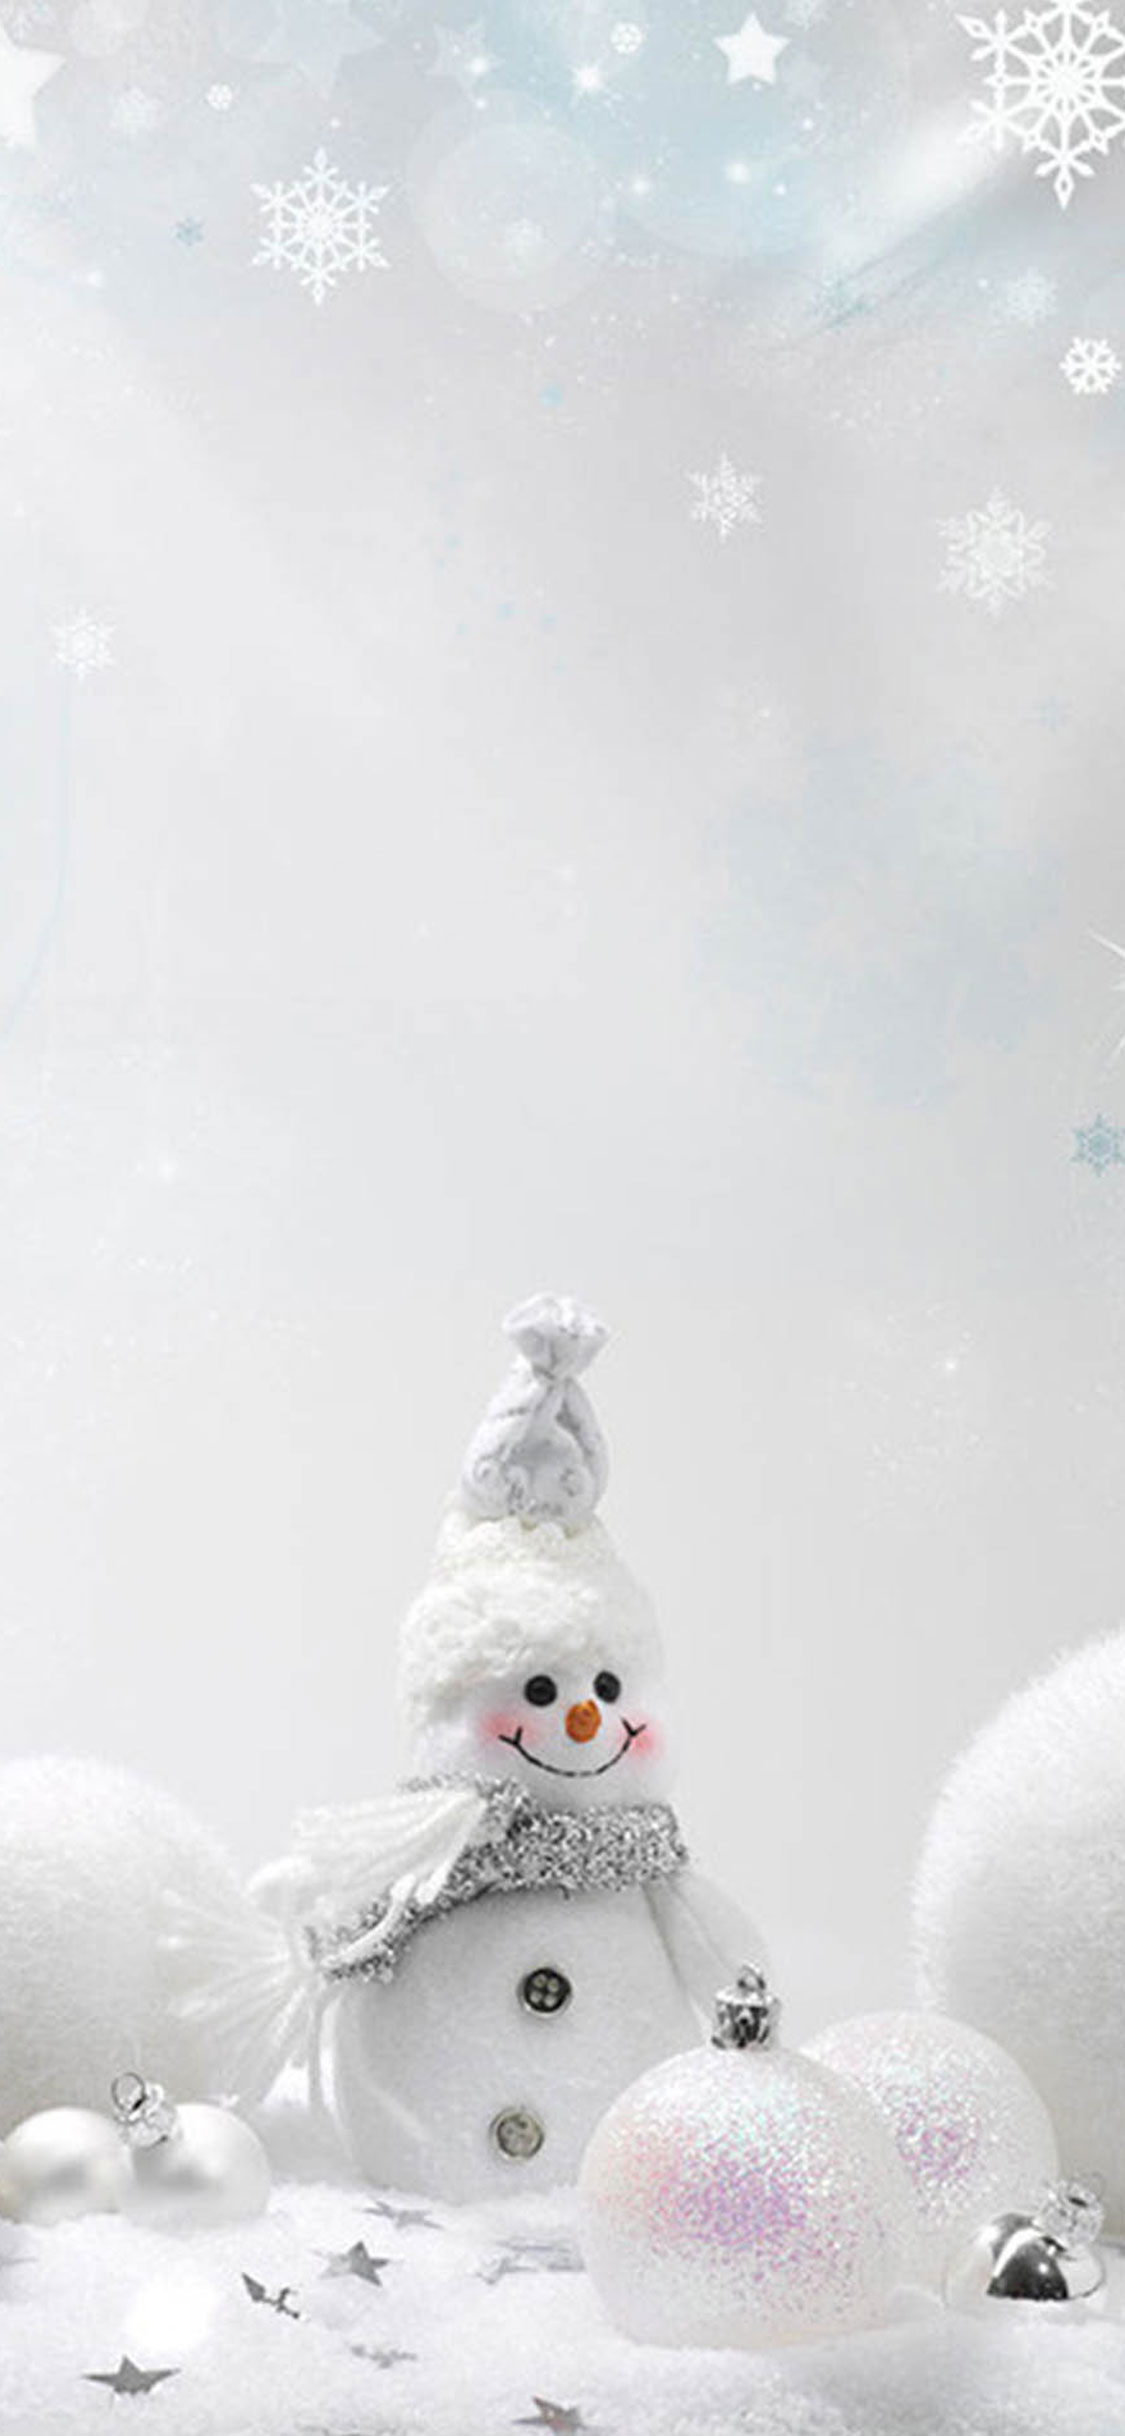 Witte sneeuwpop.jpg